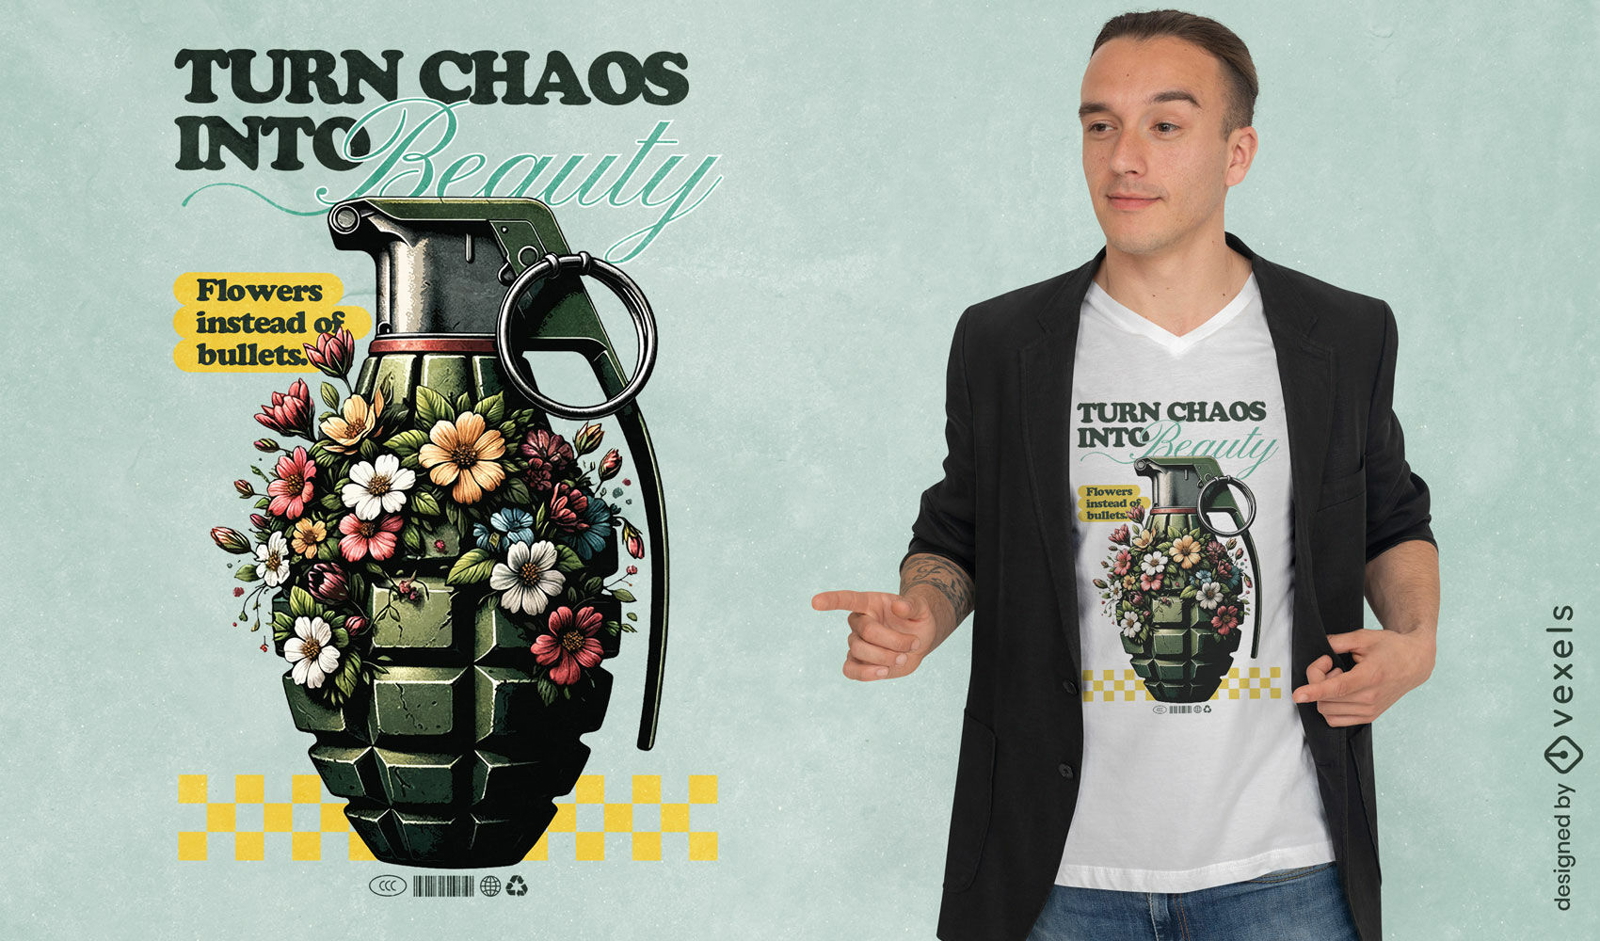 Verwandeln Sie Chaos in ein schönes T-Shirt-Design